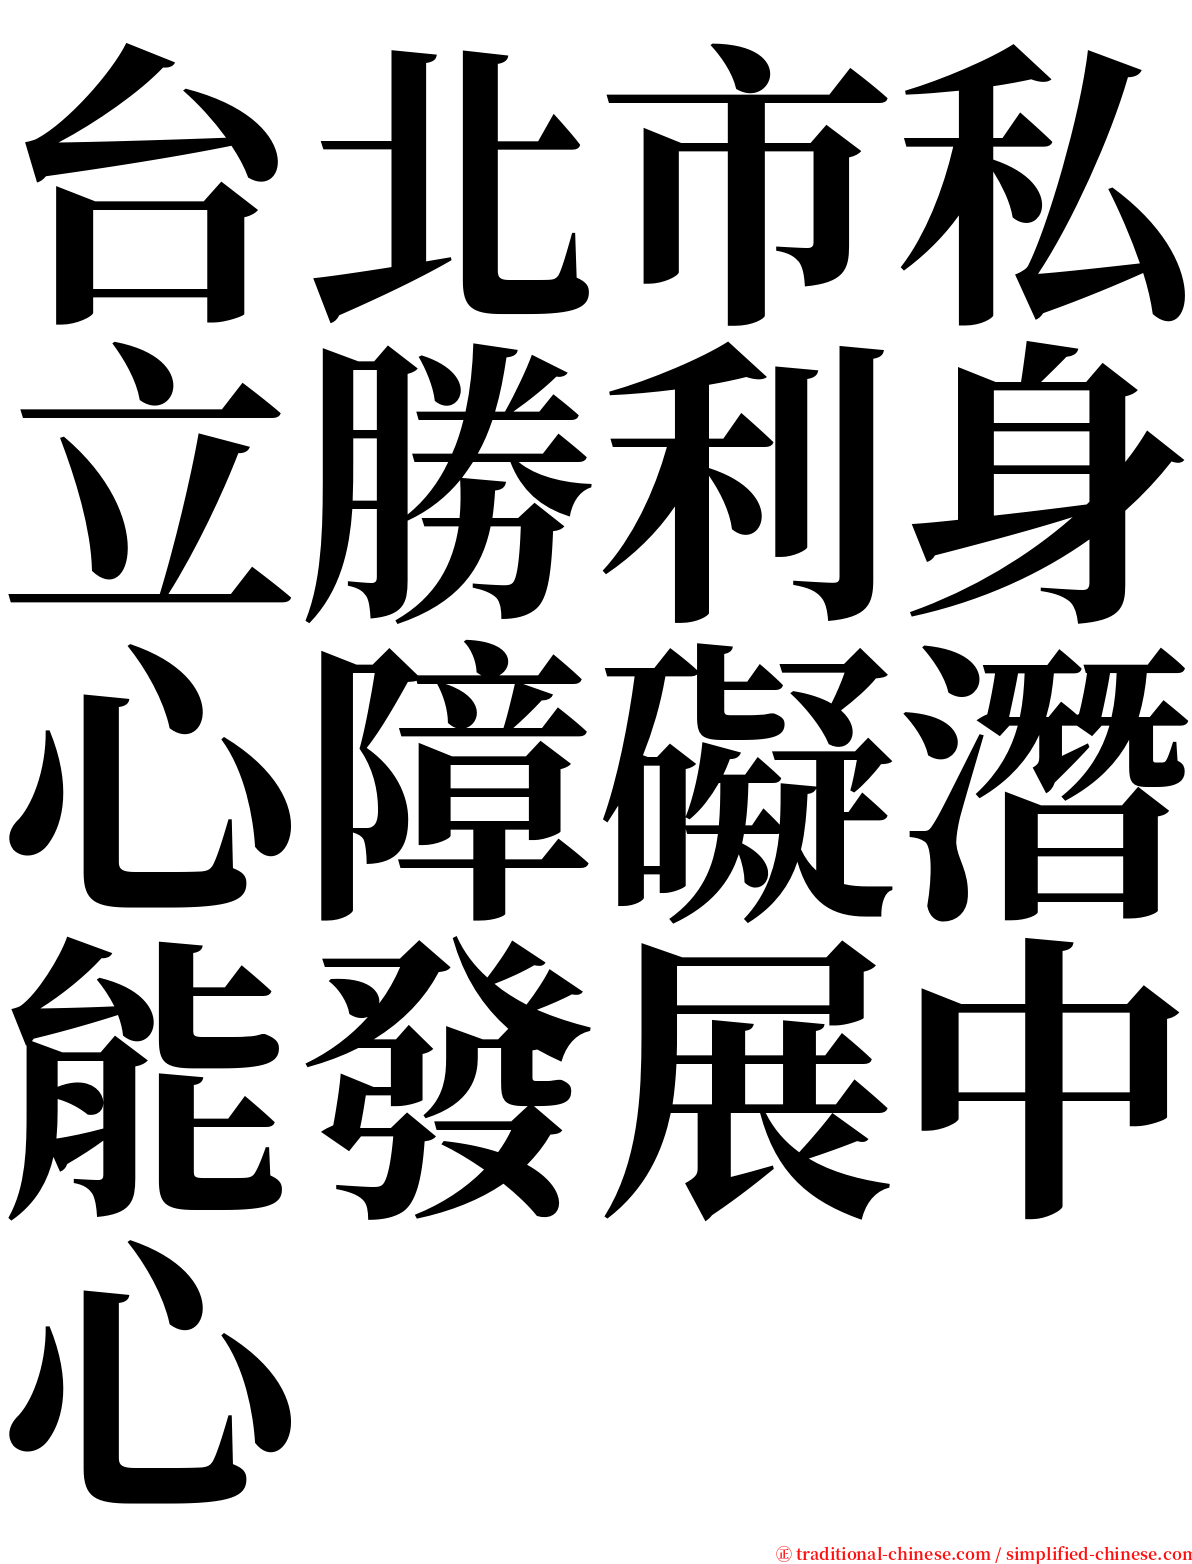 台北市私立勝利身心障礙潛能發展中心 serif font